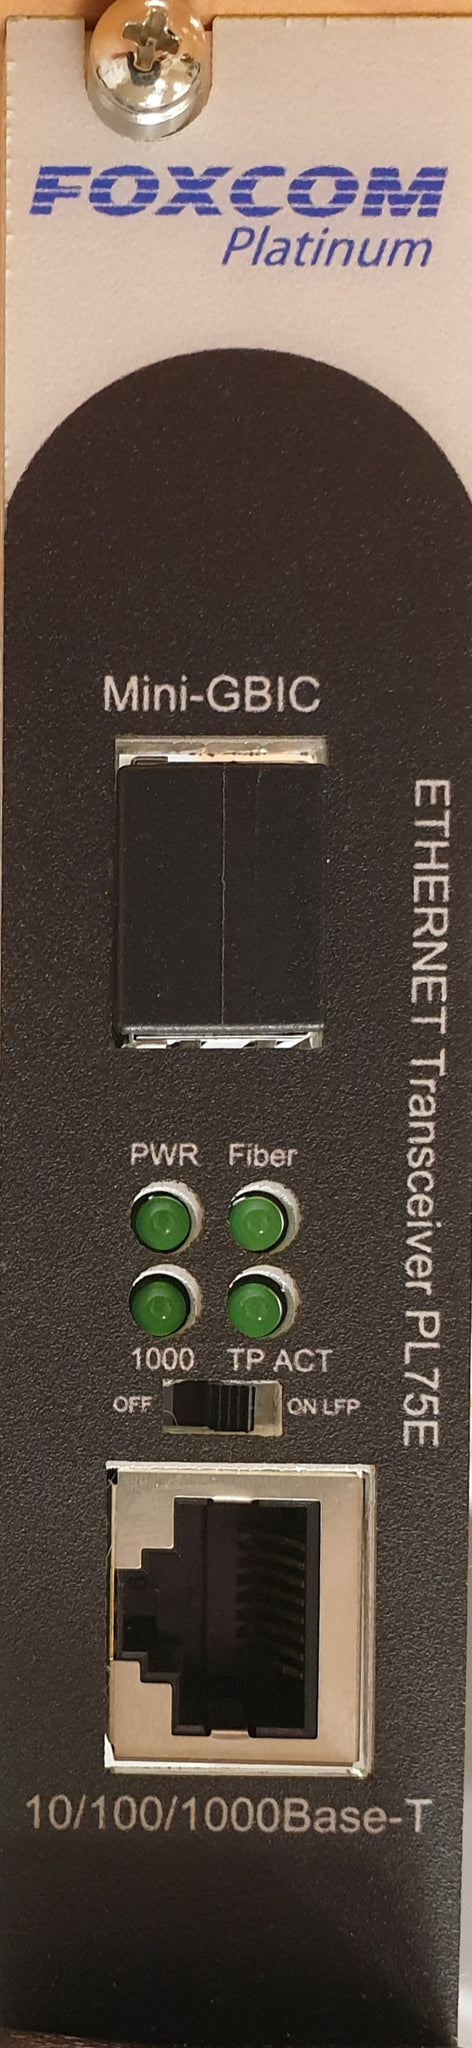 Optical Ethernet Link